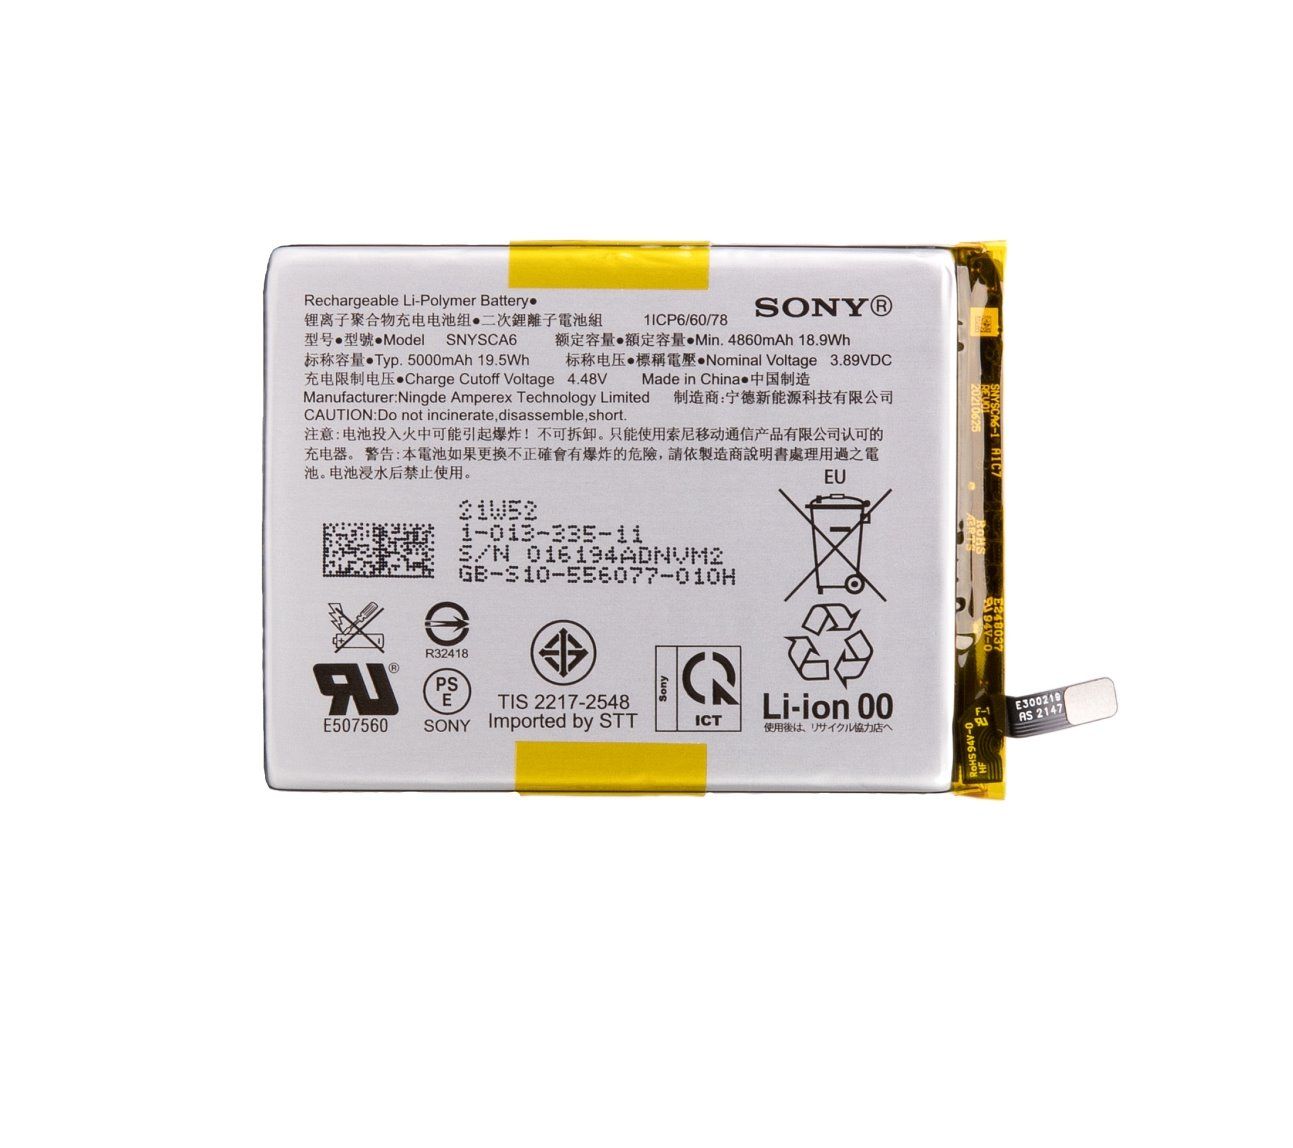 SNYSCA6 Sony Baterie 5000mAh Li-Pol (Service Pack) - Originál Sony Mobile